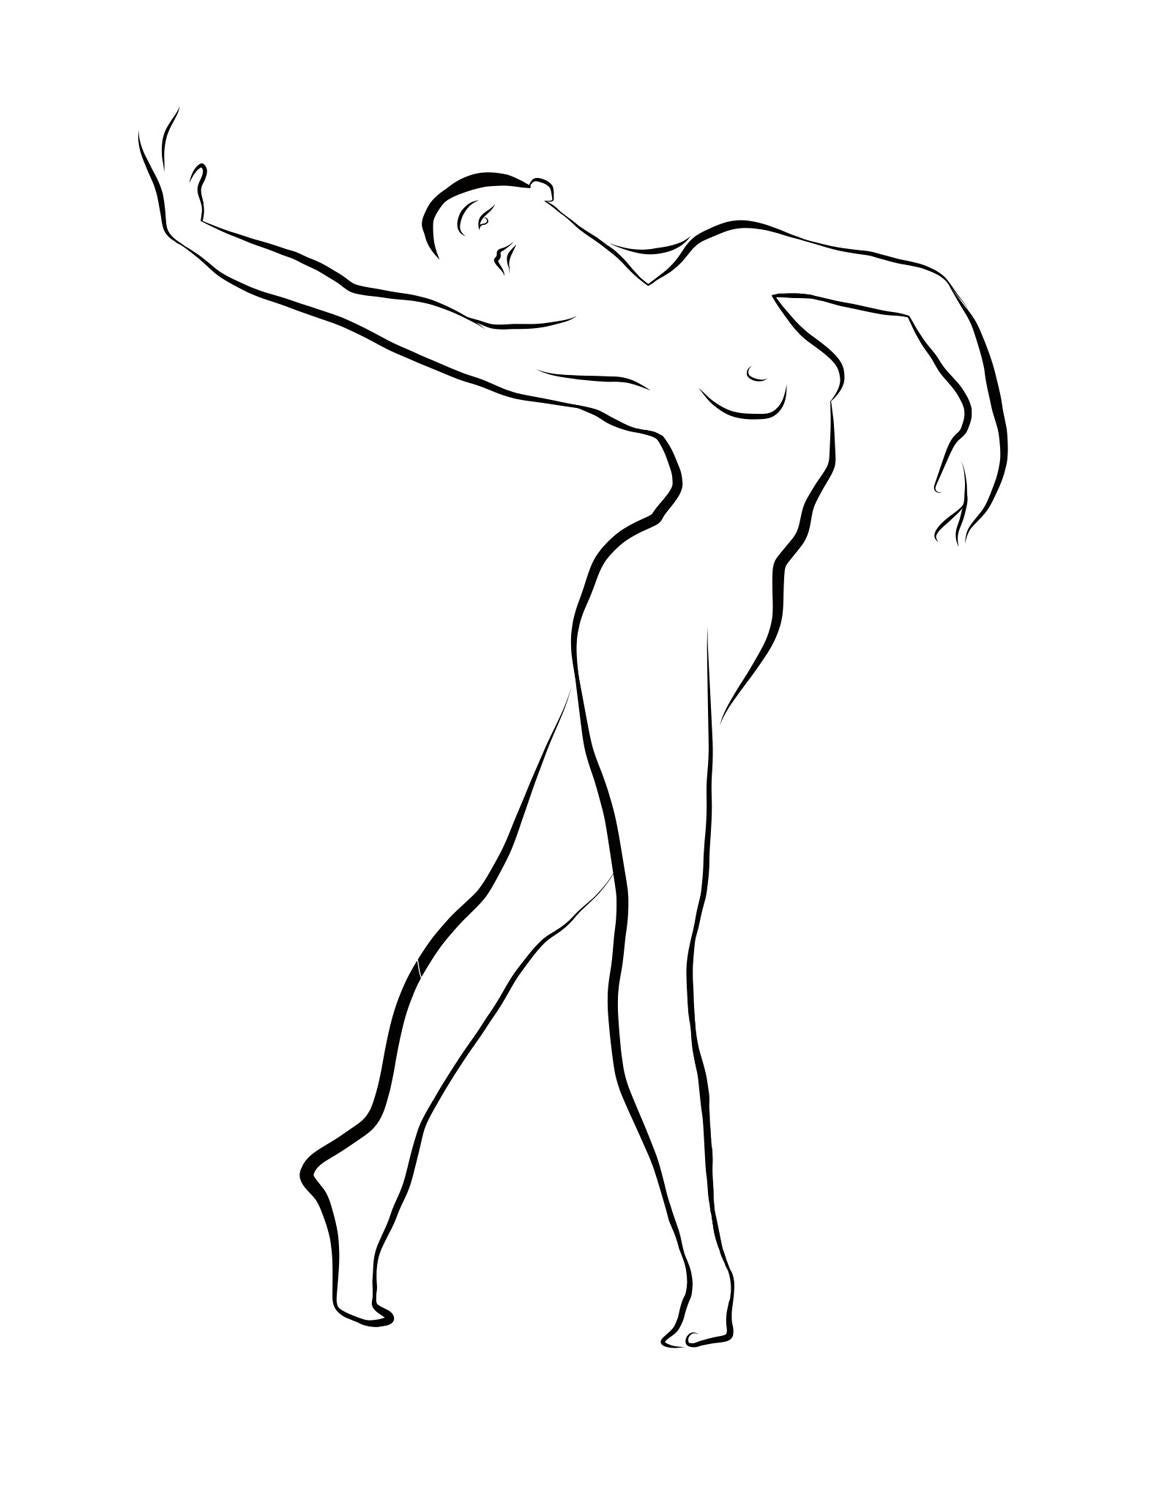 Michael Binkley Nude Print – Haiku #36 – Digitale Vector-Zeichnung anmutiger tanzender weiblicher Aktfigur